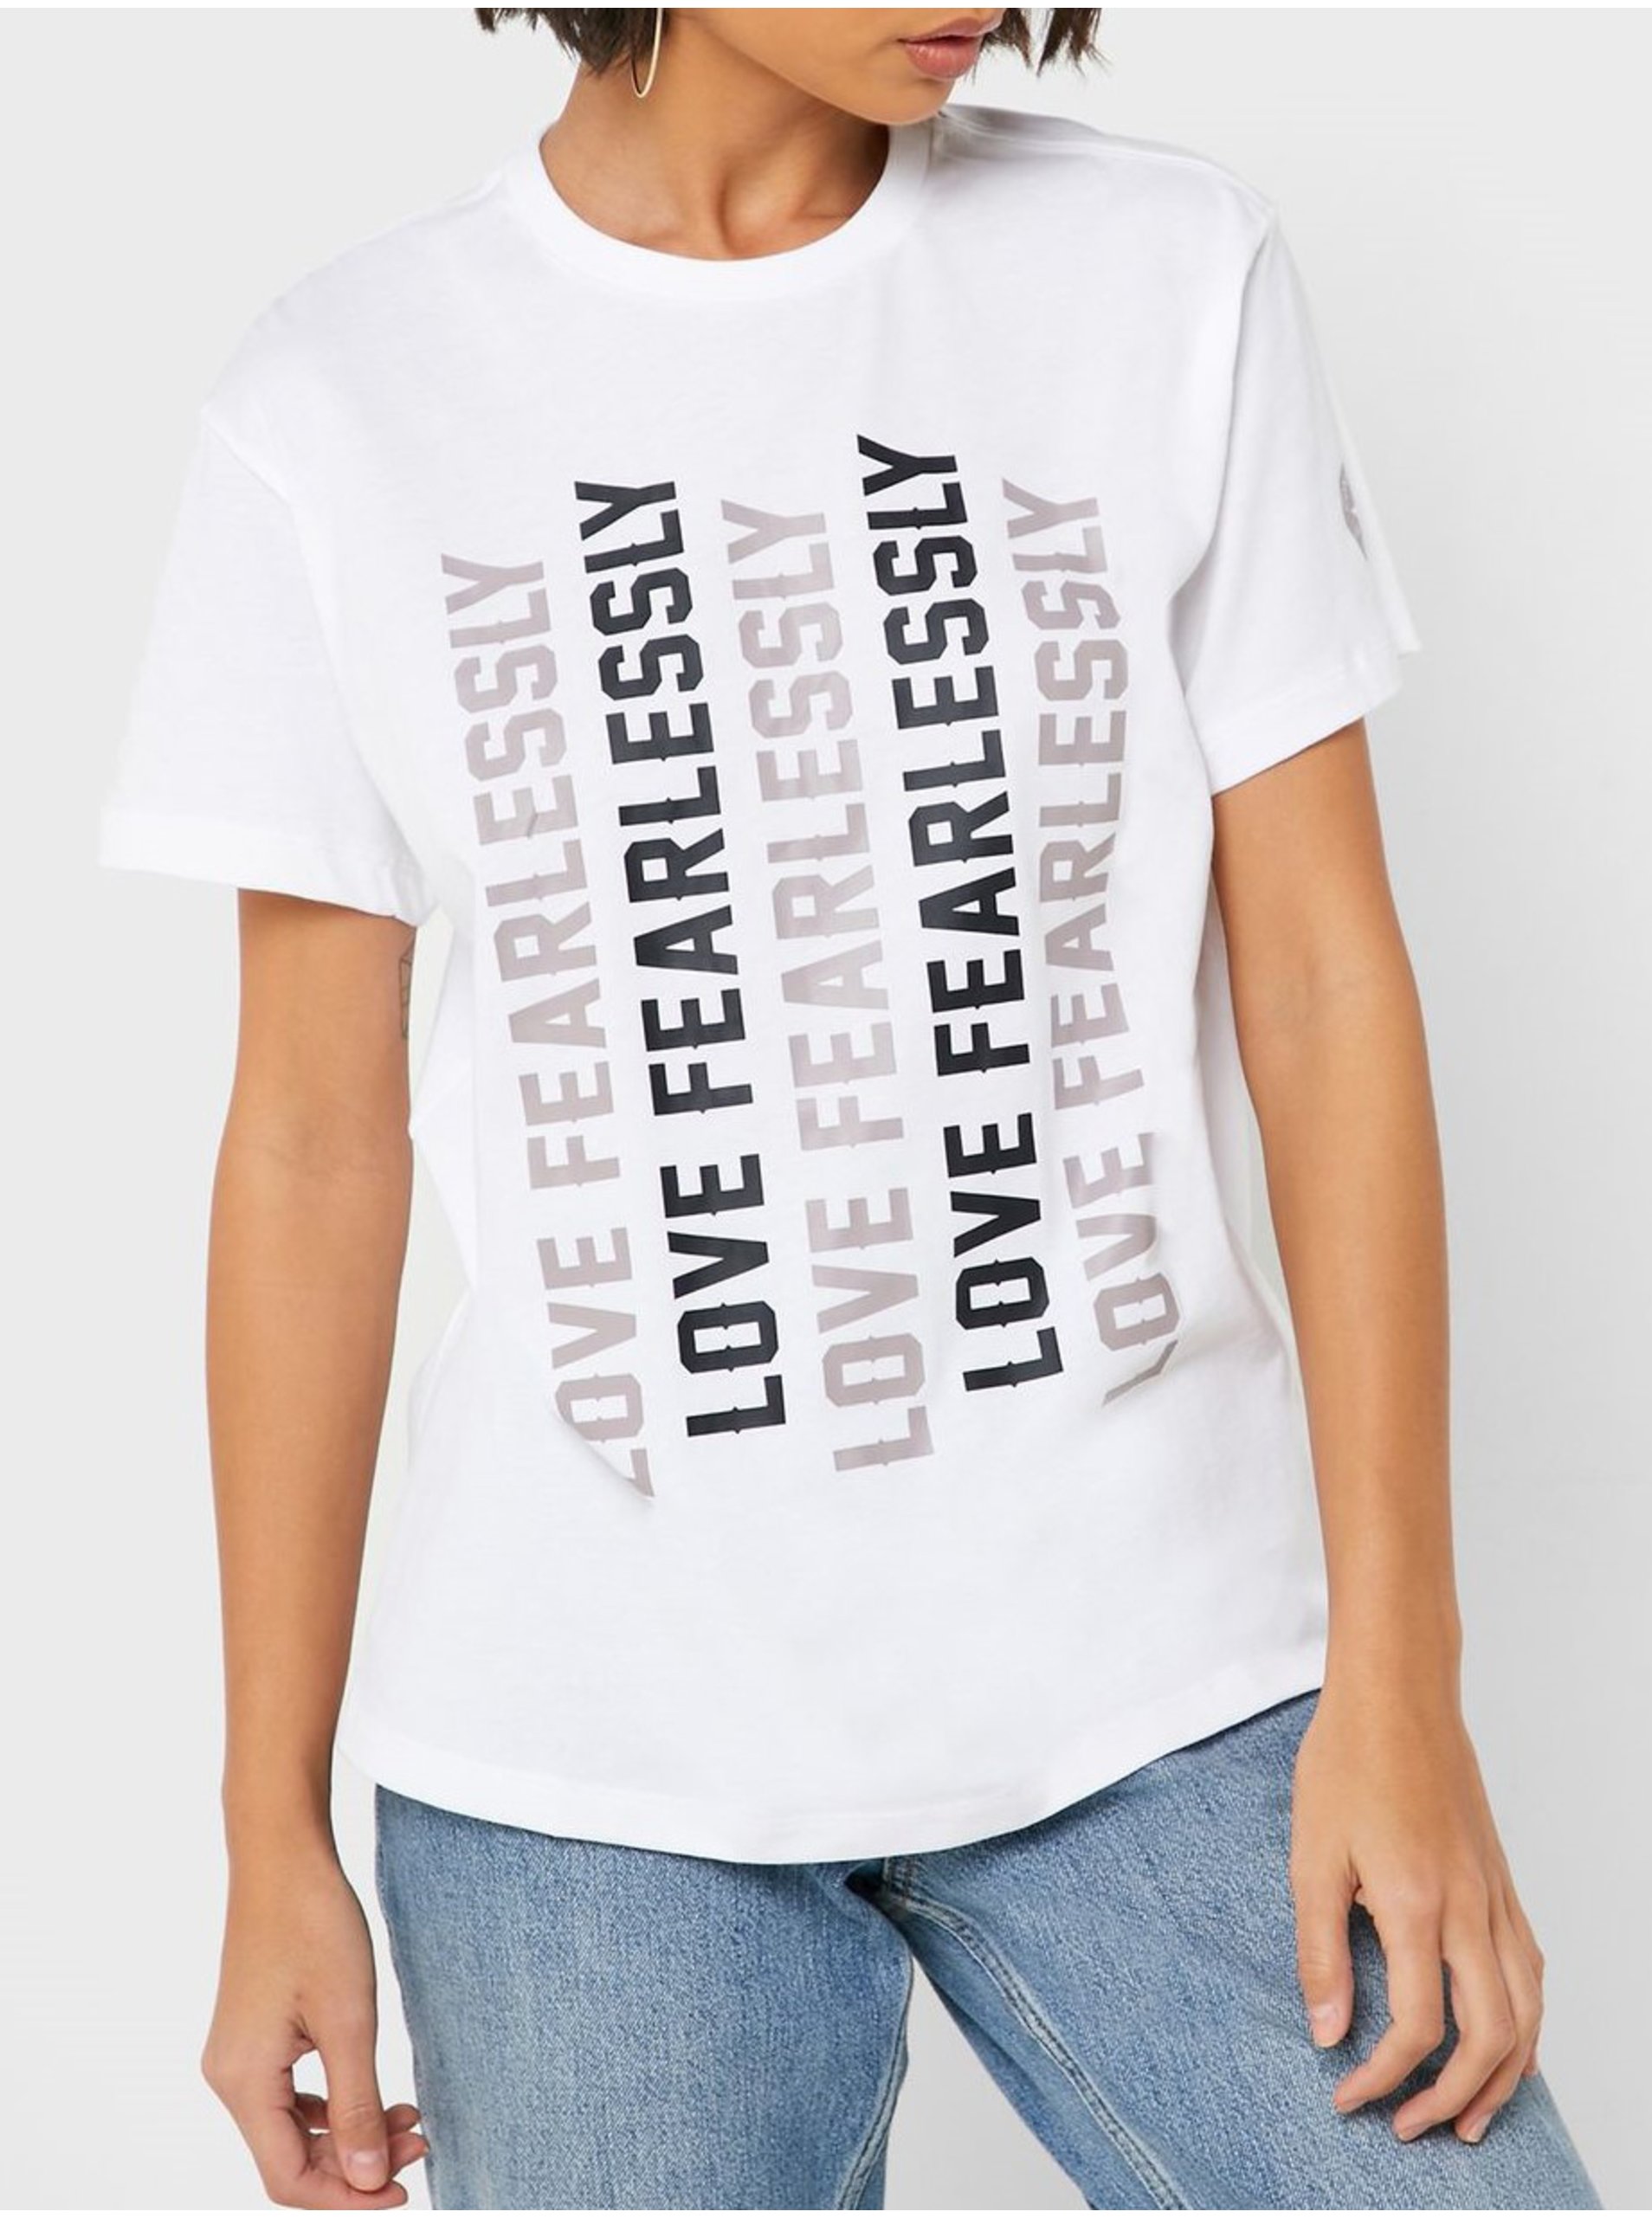 E-shop Converse bílé tričko s nápisy